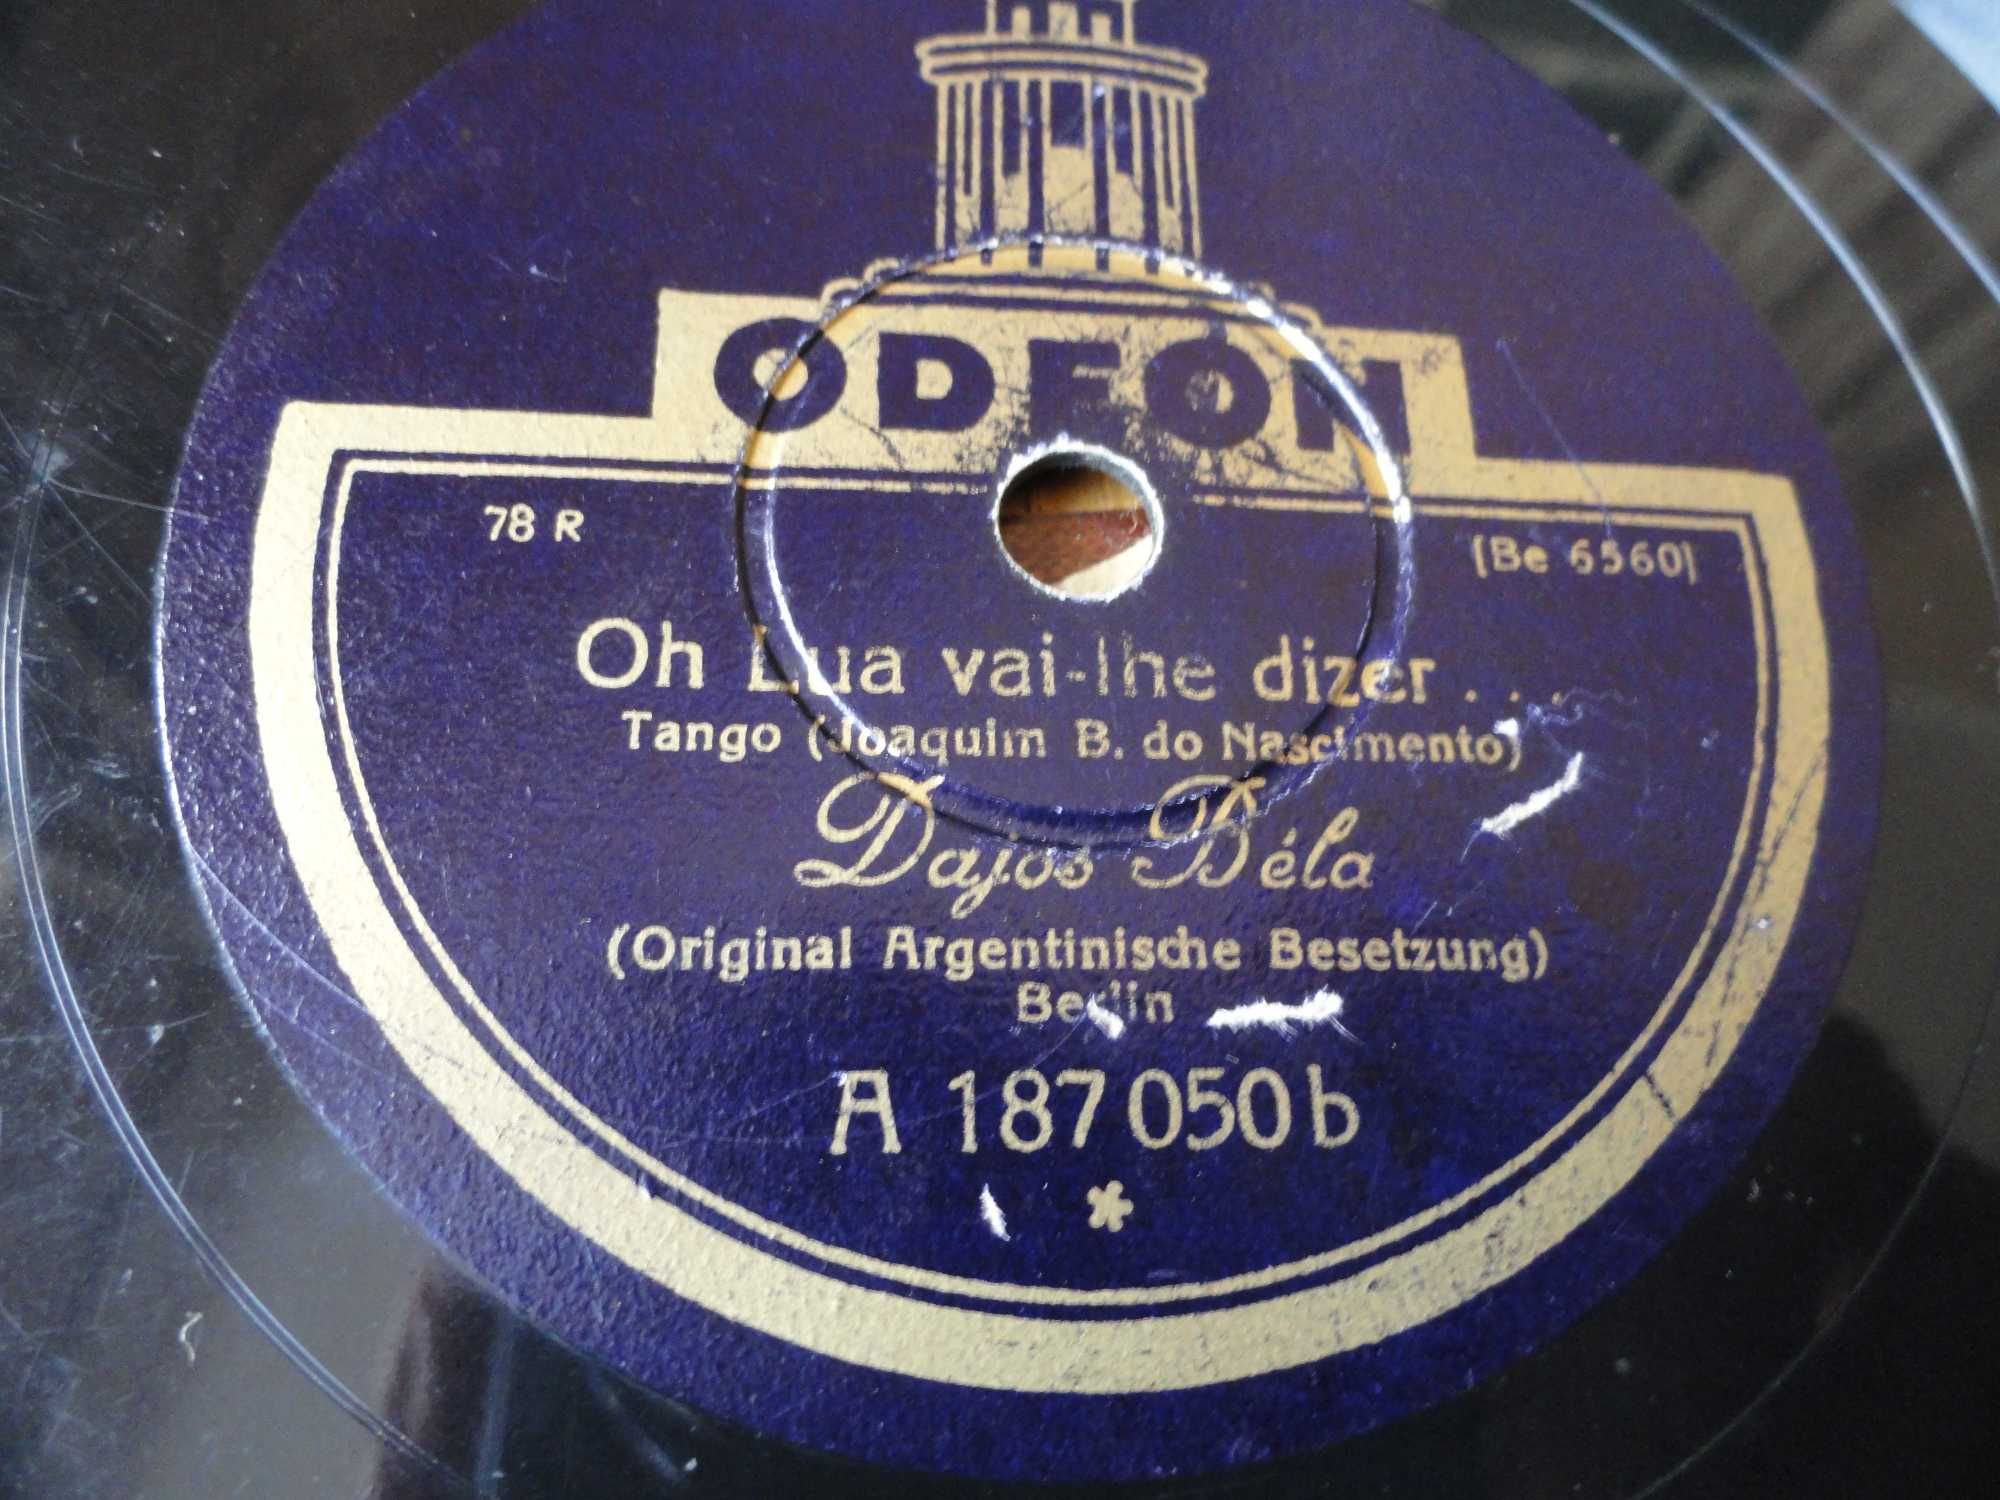 3 -  DISCOS DE 78 rpm de Tango muito antigos